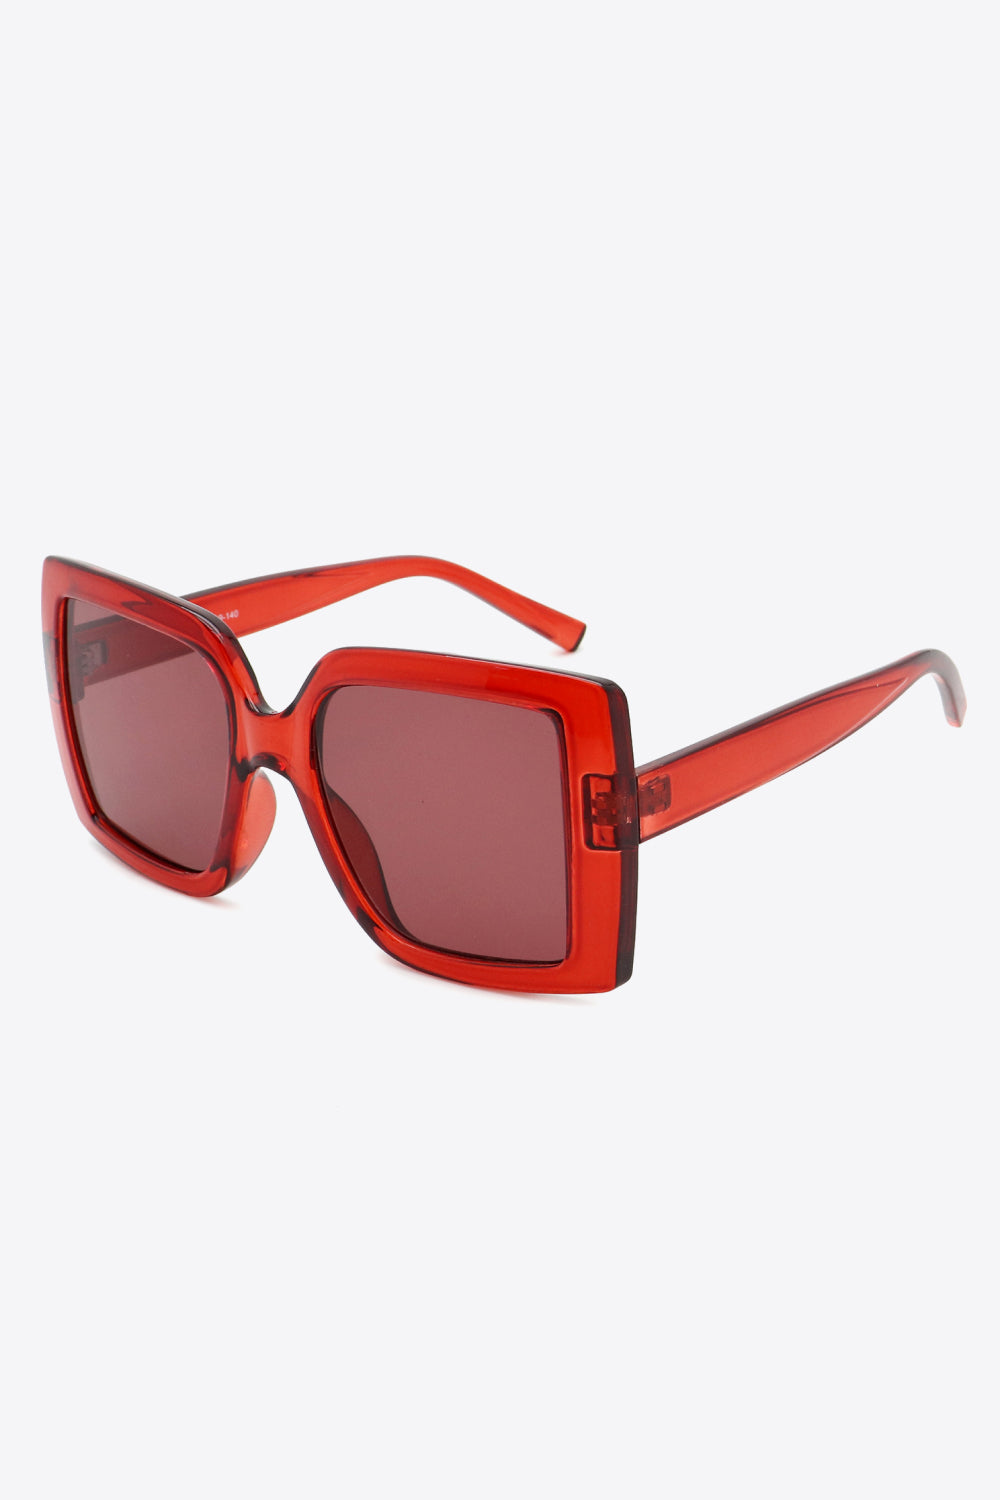 Acetate Lens Square Sunglasses - Sunglasses - FITGGINS